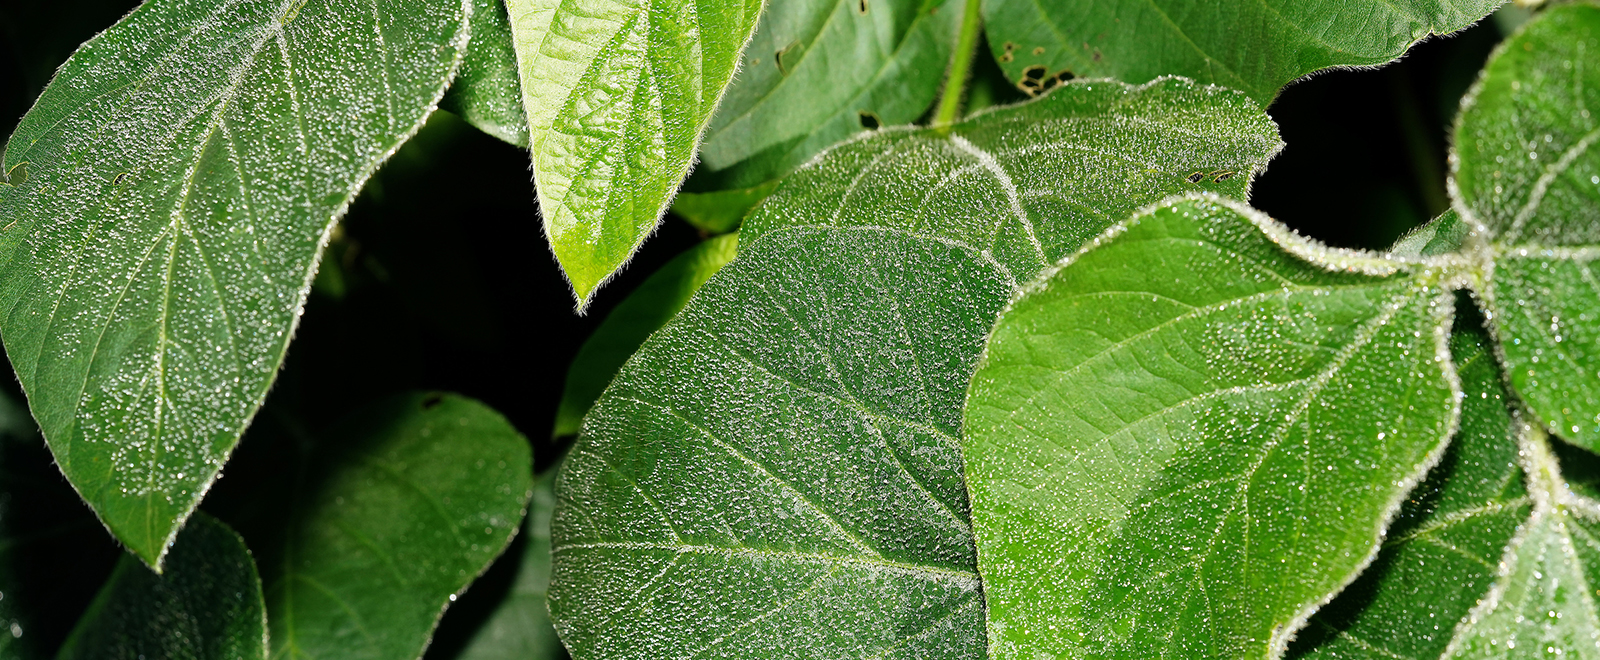 Soybean leaf